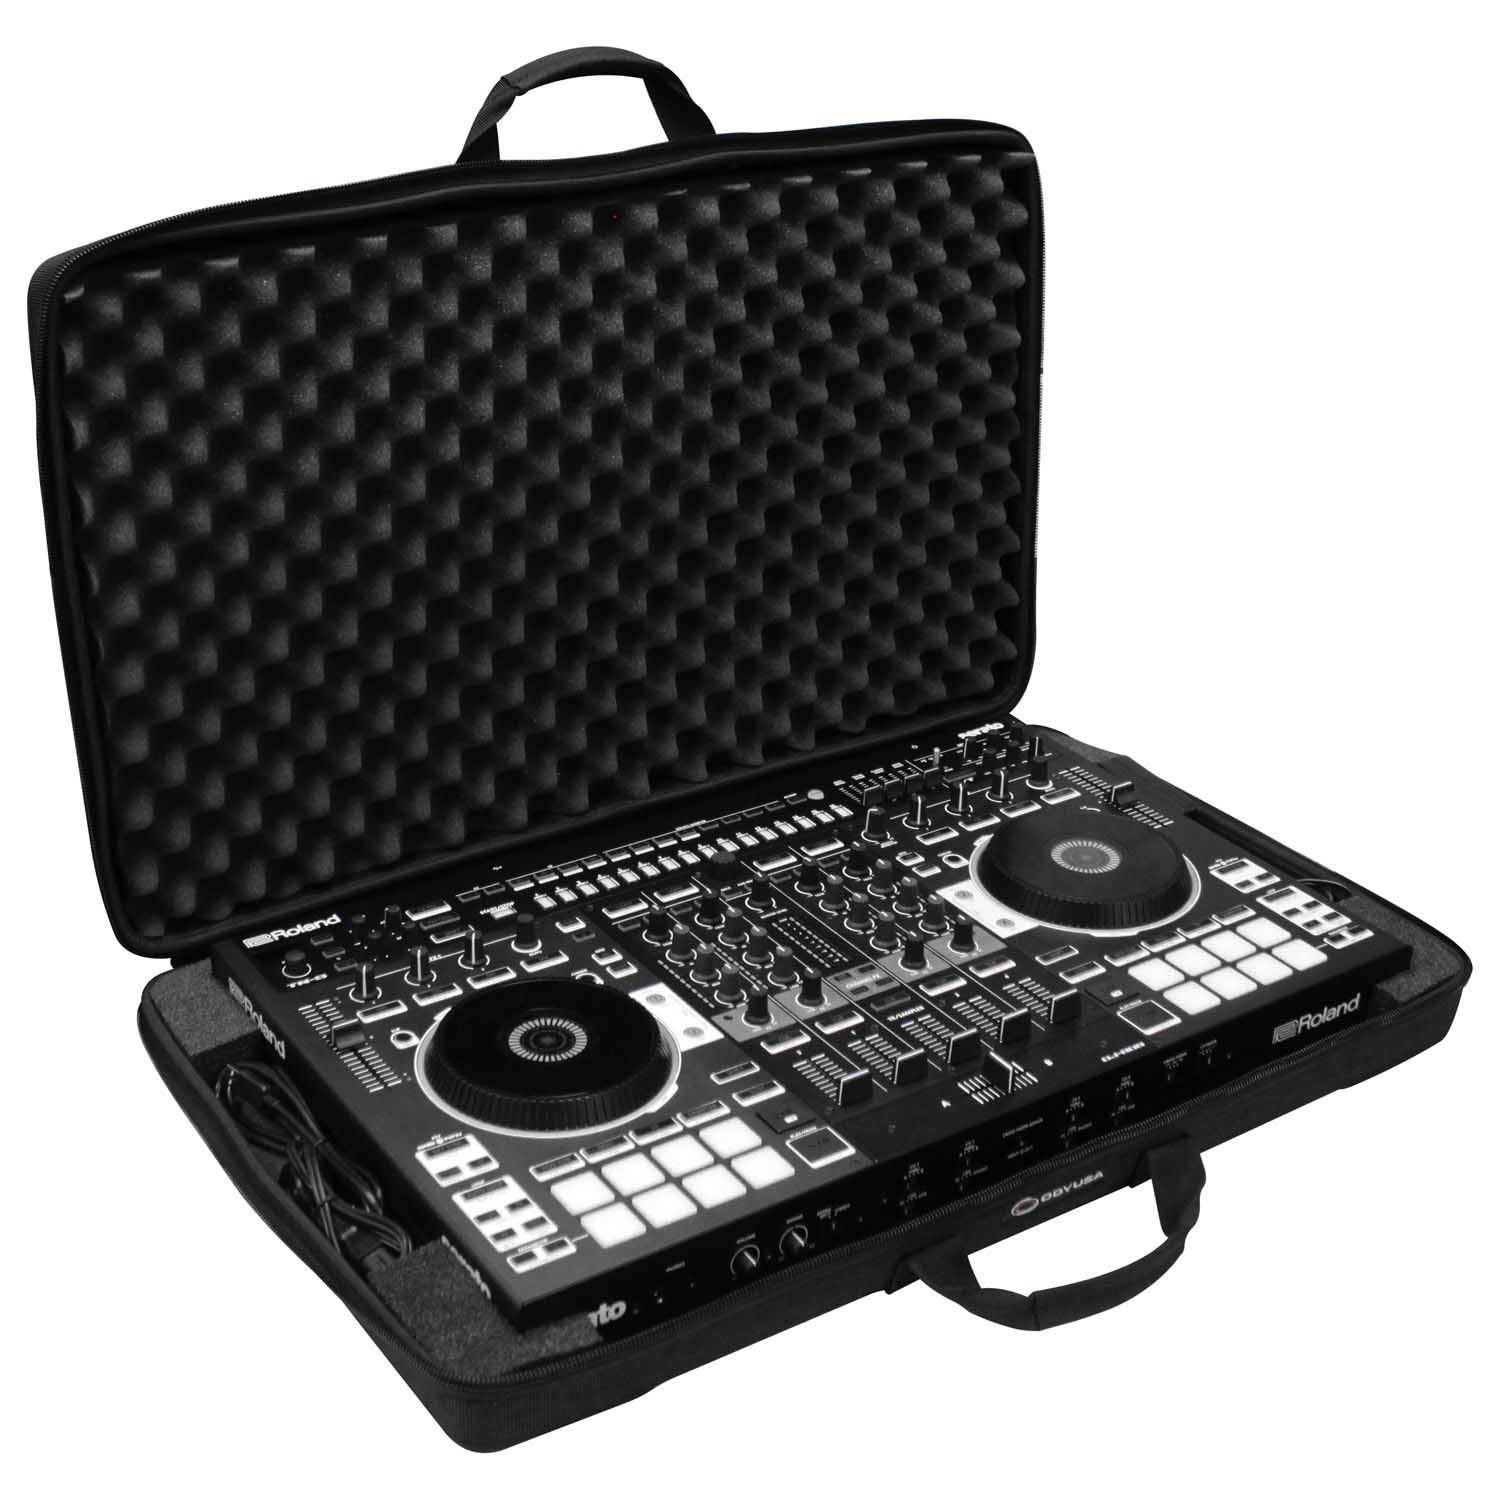 Odyssey BMSLRODJ808 EVA Molded Carrying Bag For Roland DJ-808 DJ Controller - Hollywood DJ